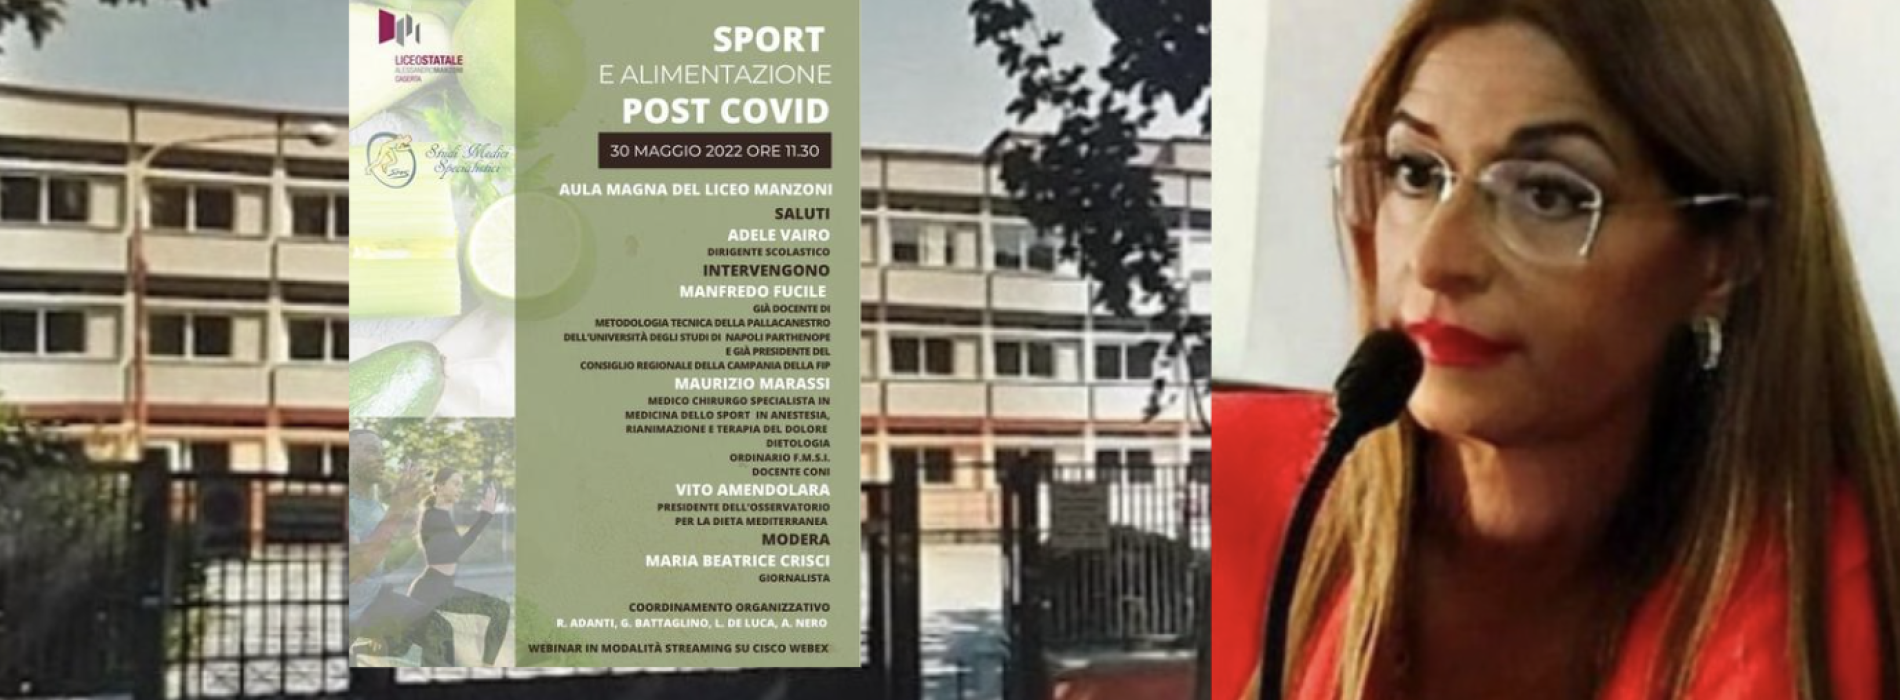 Sport e alimentazione post covid, il format al Liceo Manzoni